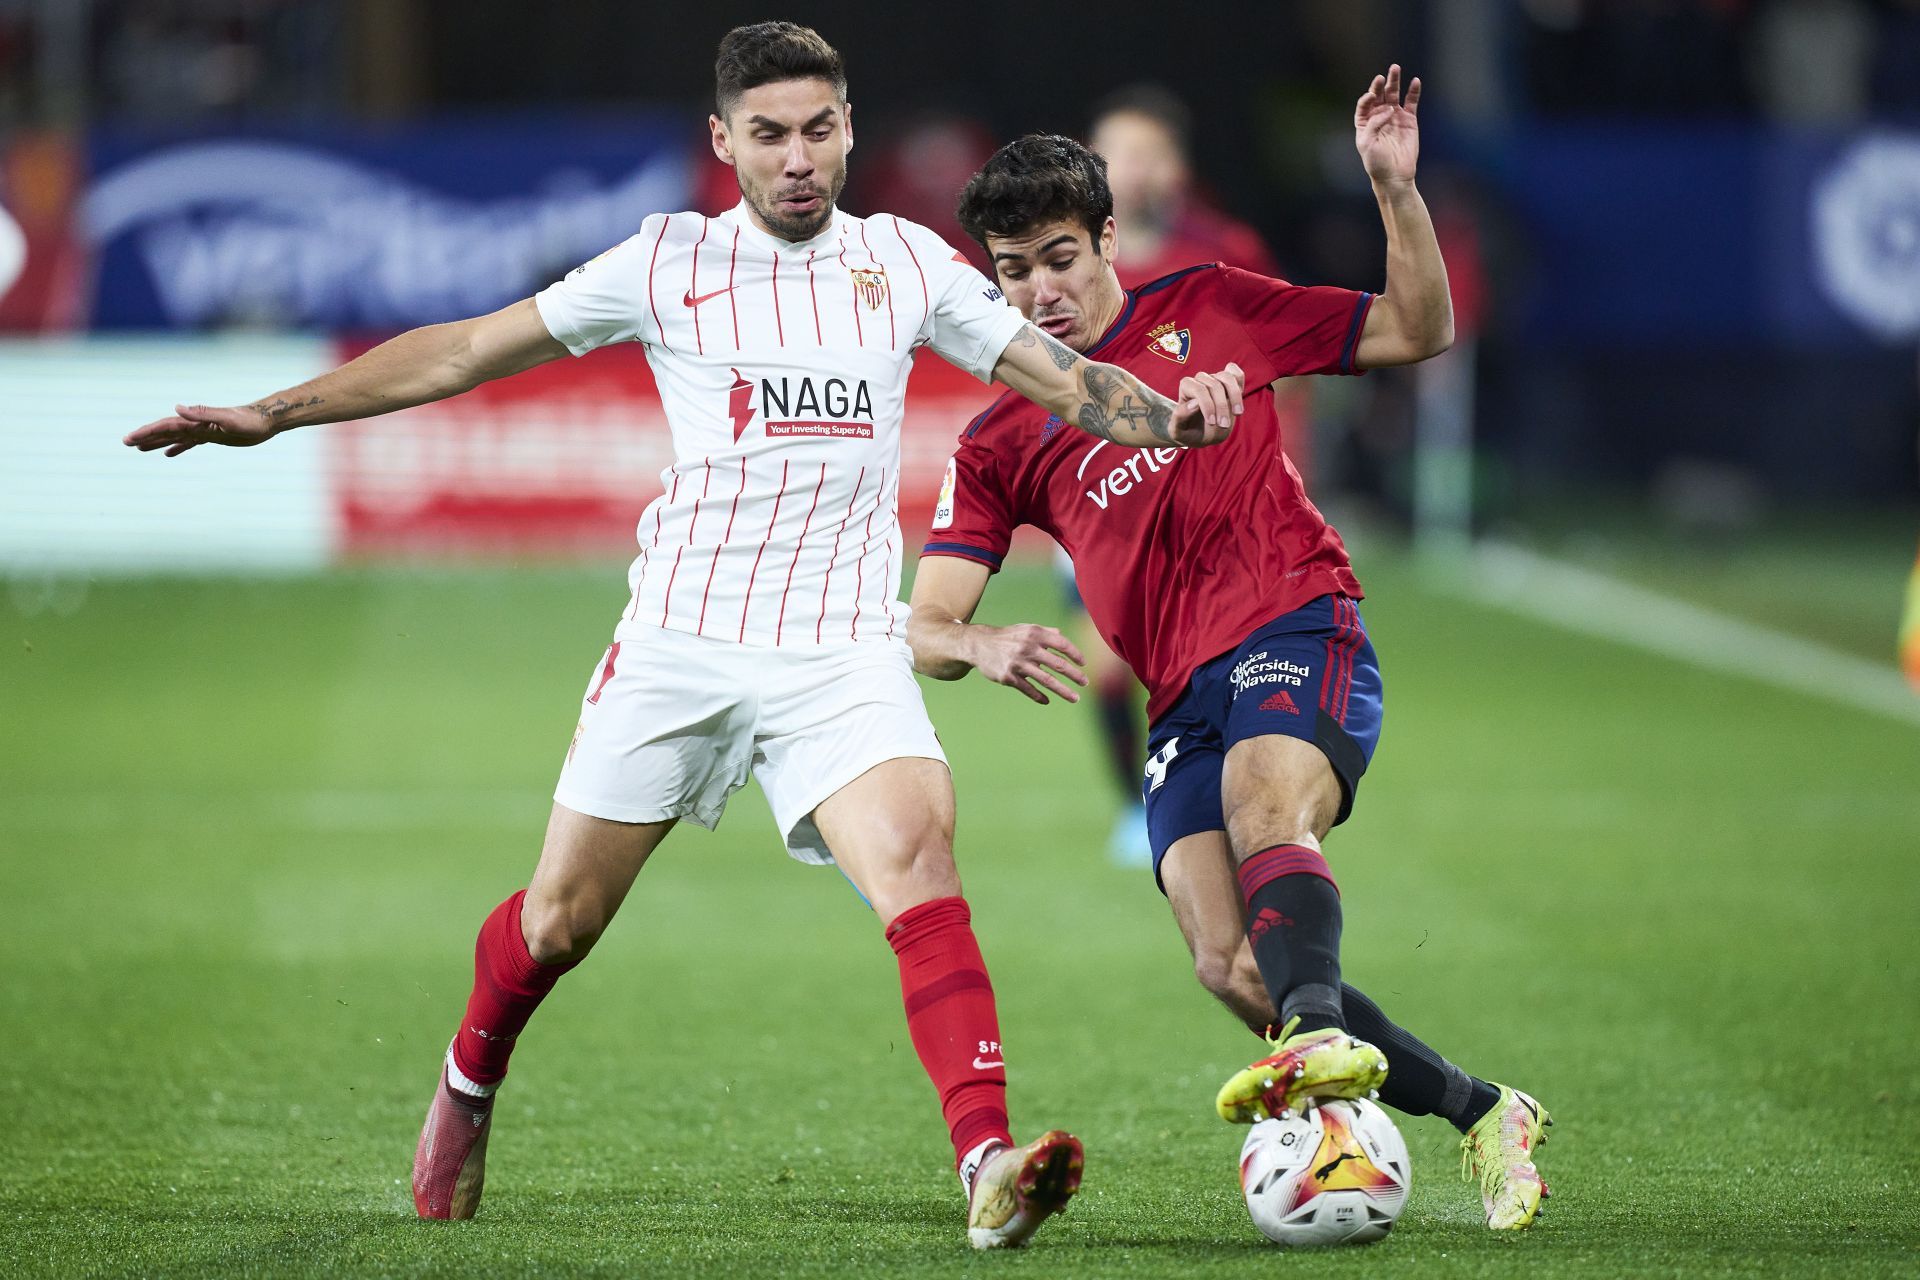 Sevilla and Dinamo Zagreb go head to head on Thursday